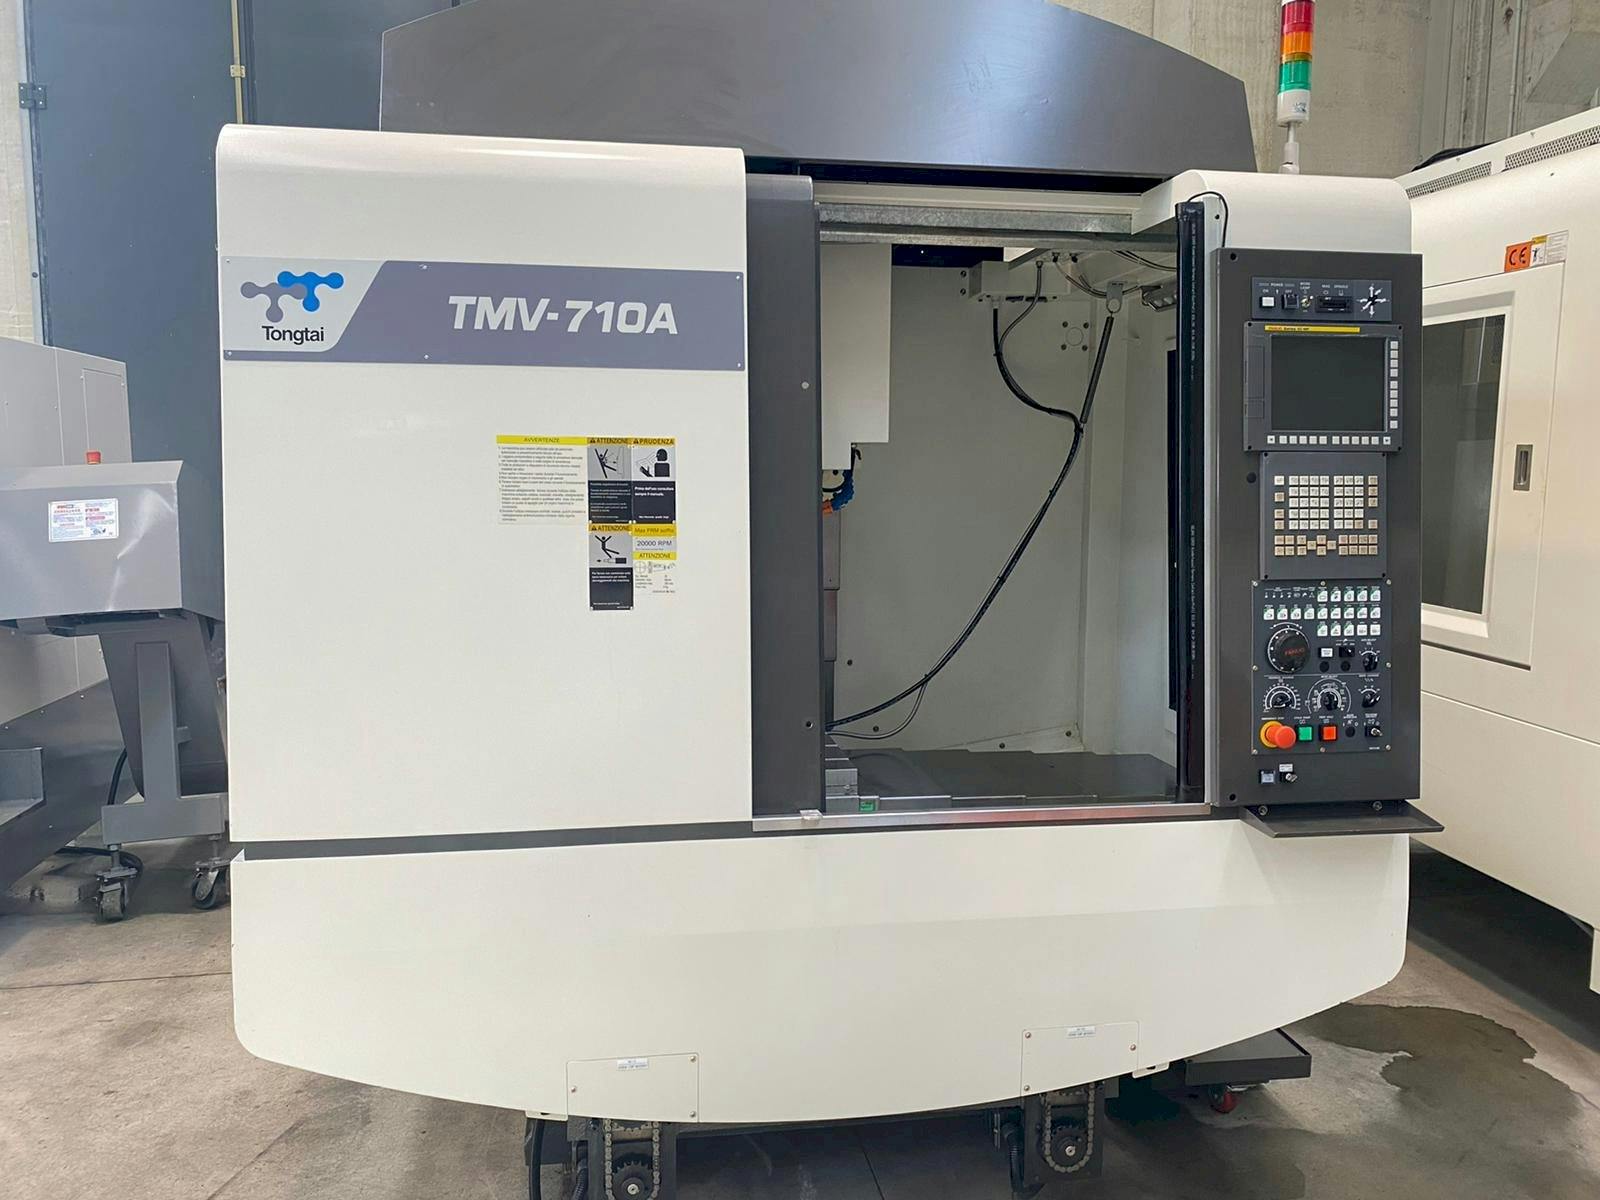 Frontansicht der Tongtai TMV-710A  Maschine